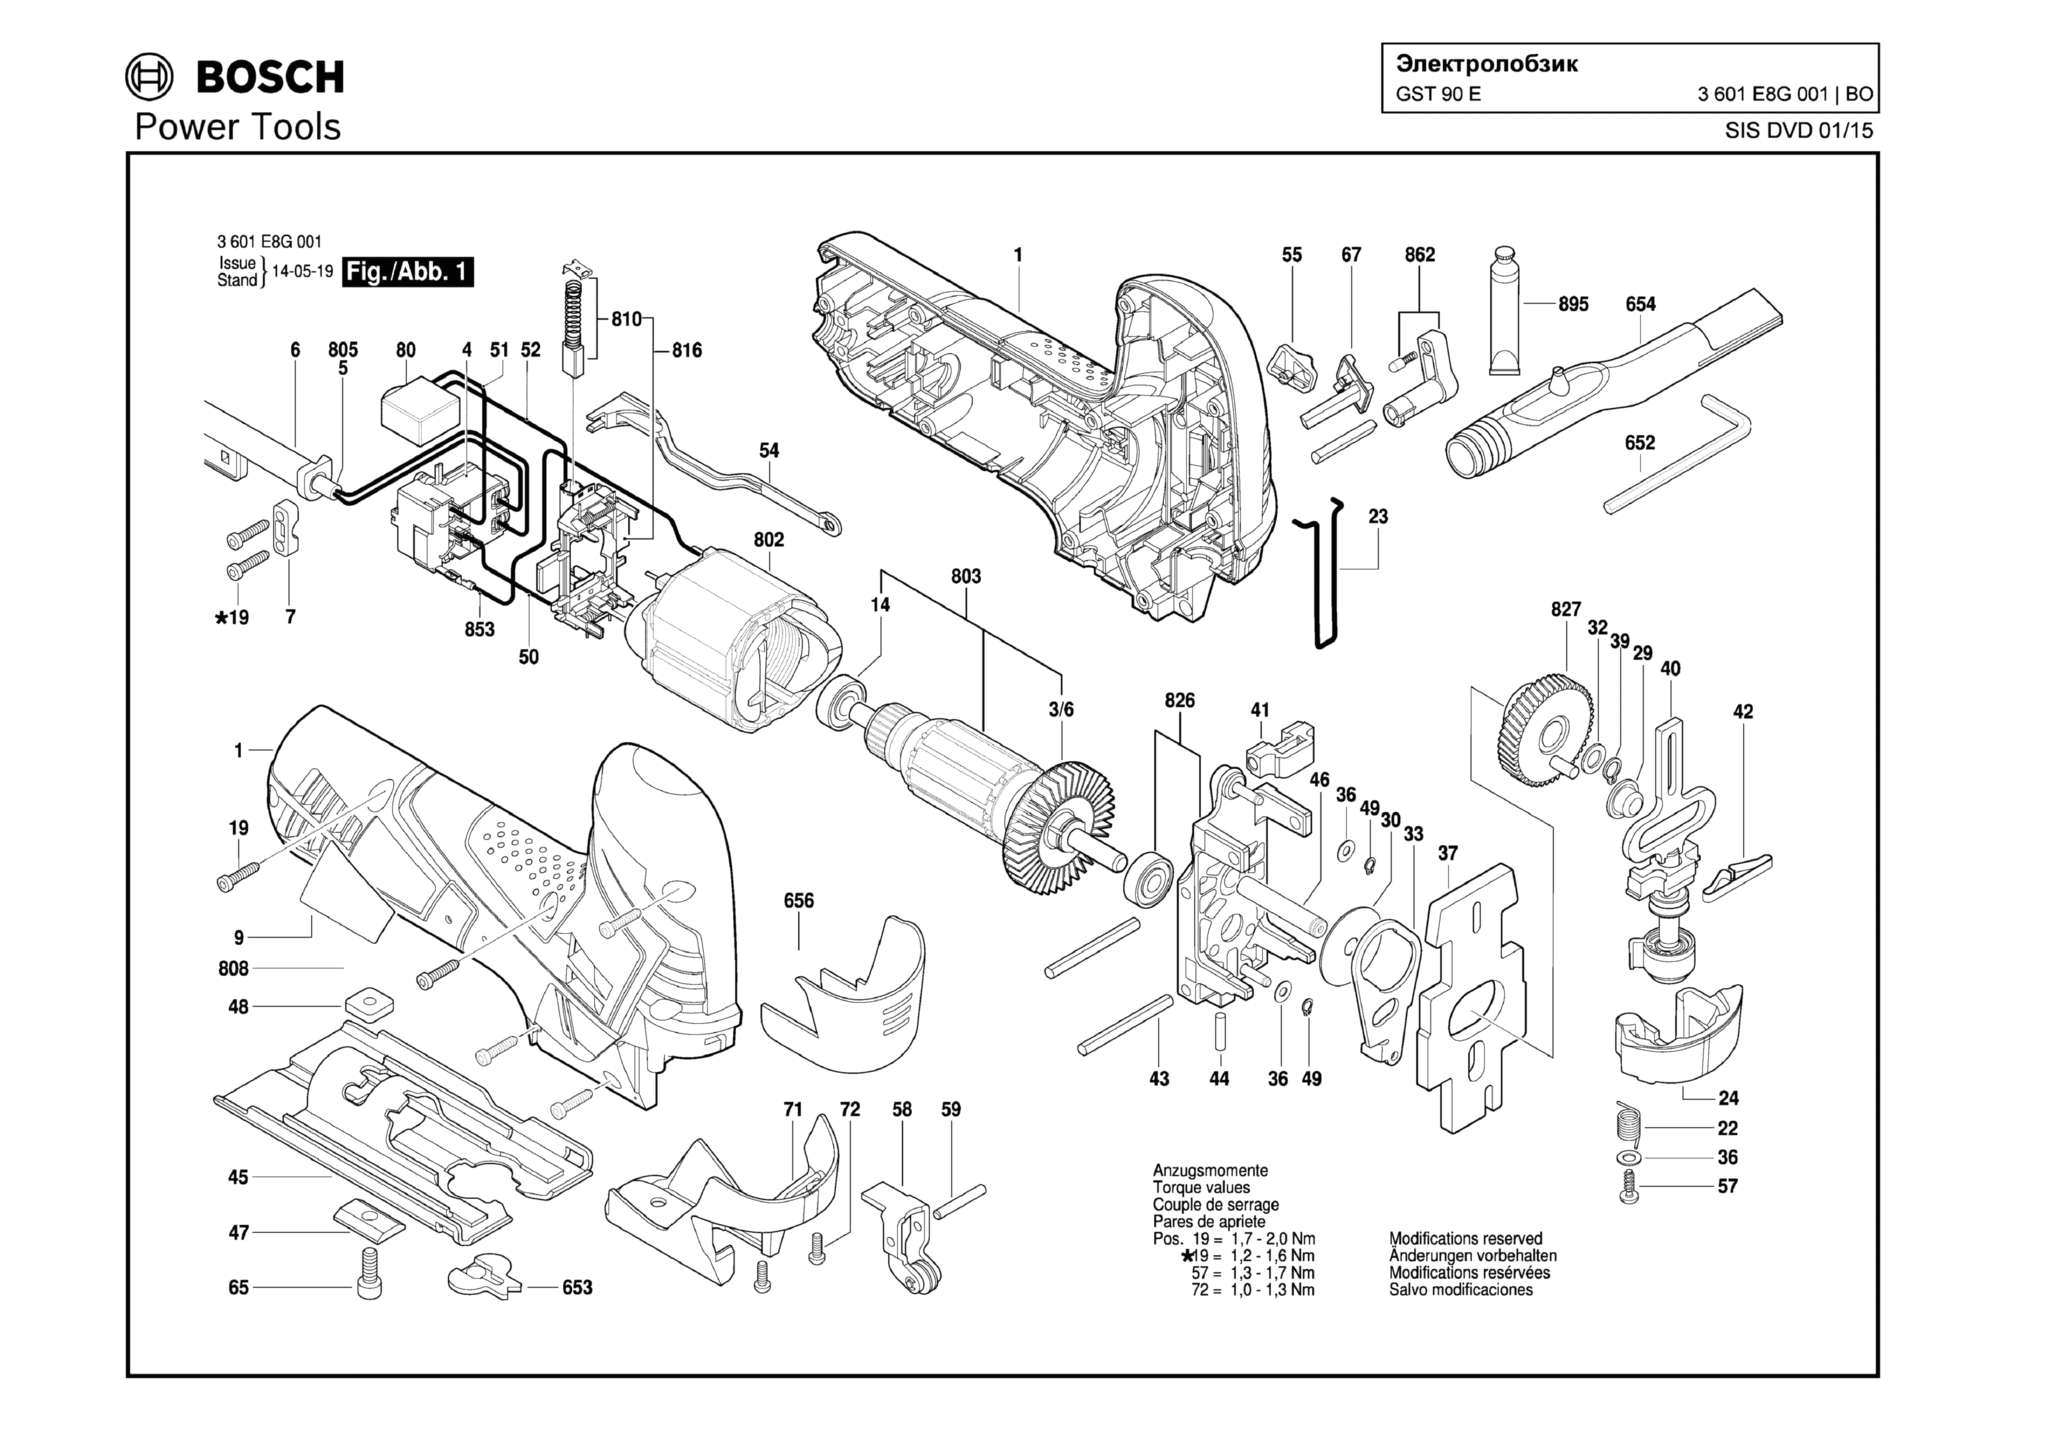 Запчасти, схема и деталировка Bosch GST 90 E (ТИП 3601E8G001)